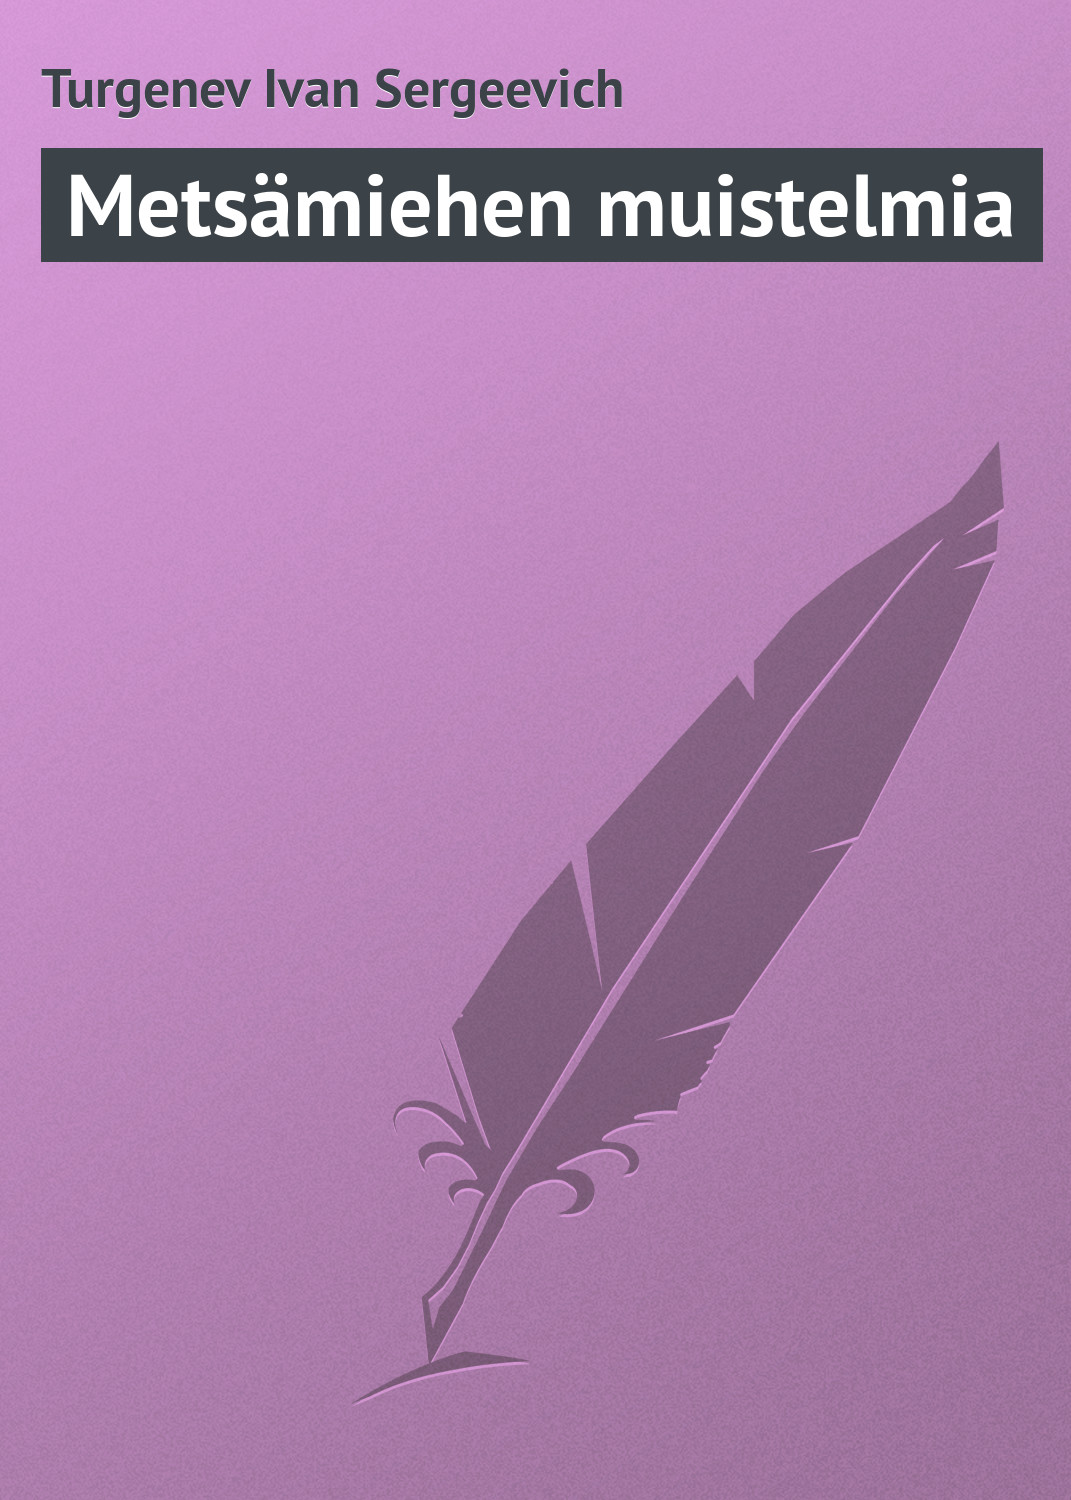 Книга Metsämiehen muistelmia из серии , созданная Turgenev Ivan, может относится к жанру Русская классика. Стоимость электронной книги Metsämiehen muistelmia с идентификатором 23167083 составляет 5.99 руб.